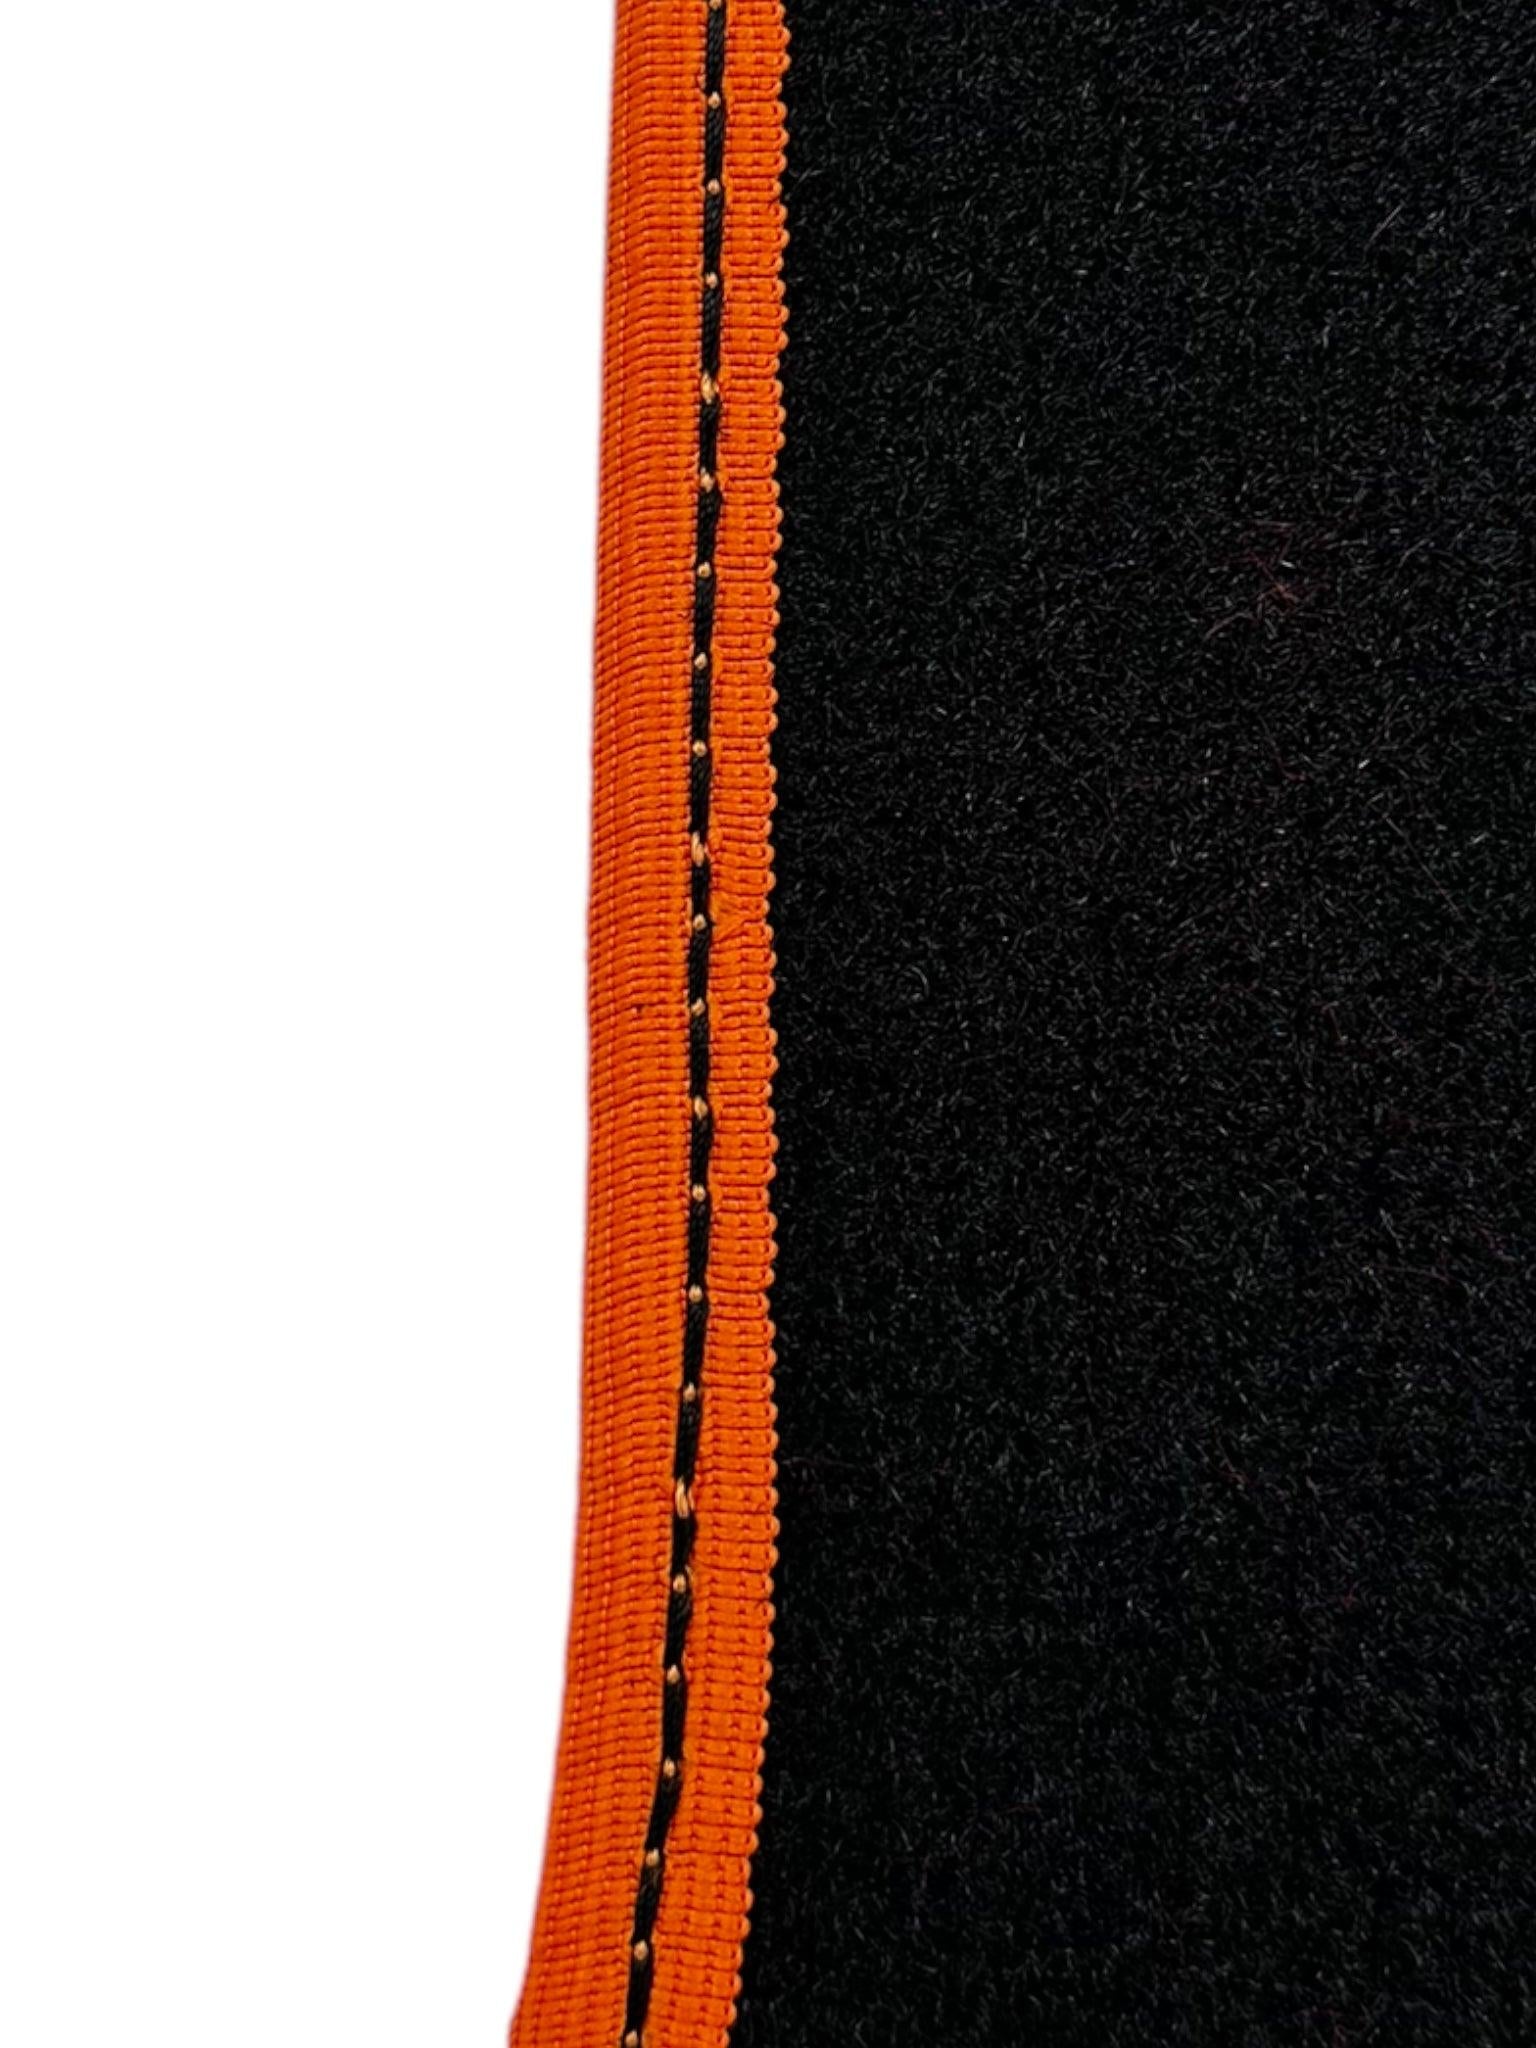 Black Floor Mats for McLaren 600 LT (2018-2020) With Alcantara Leather